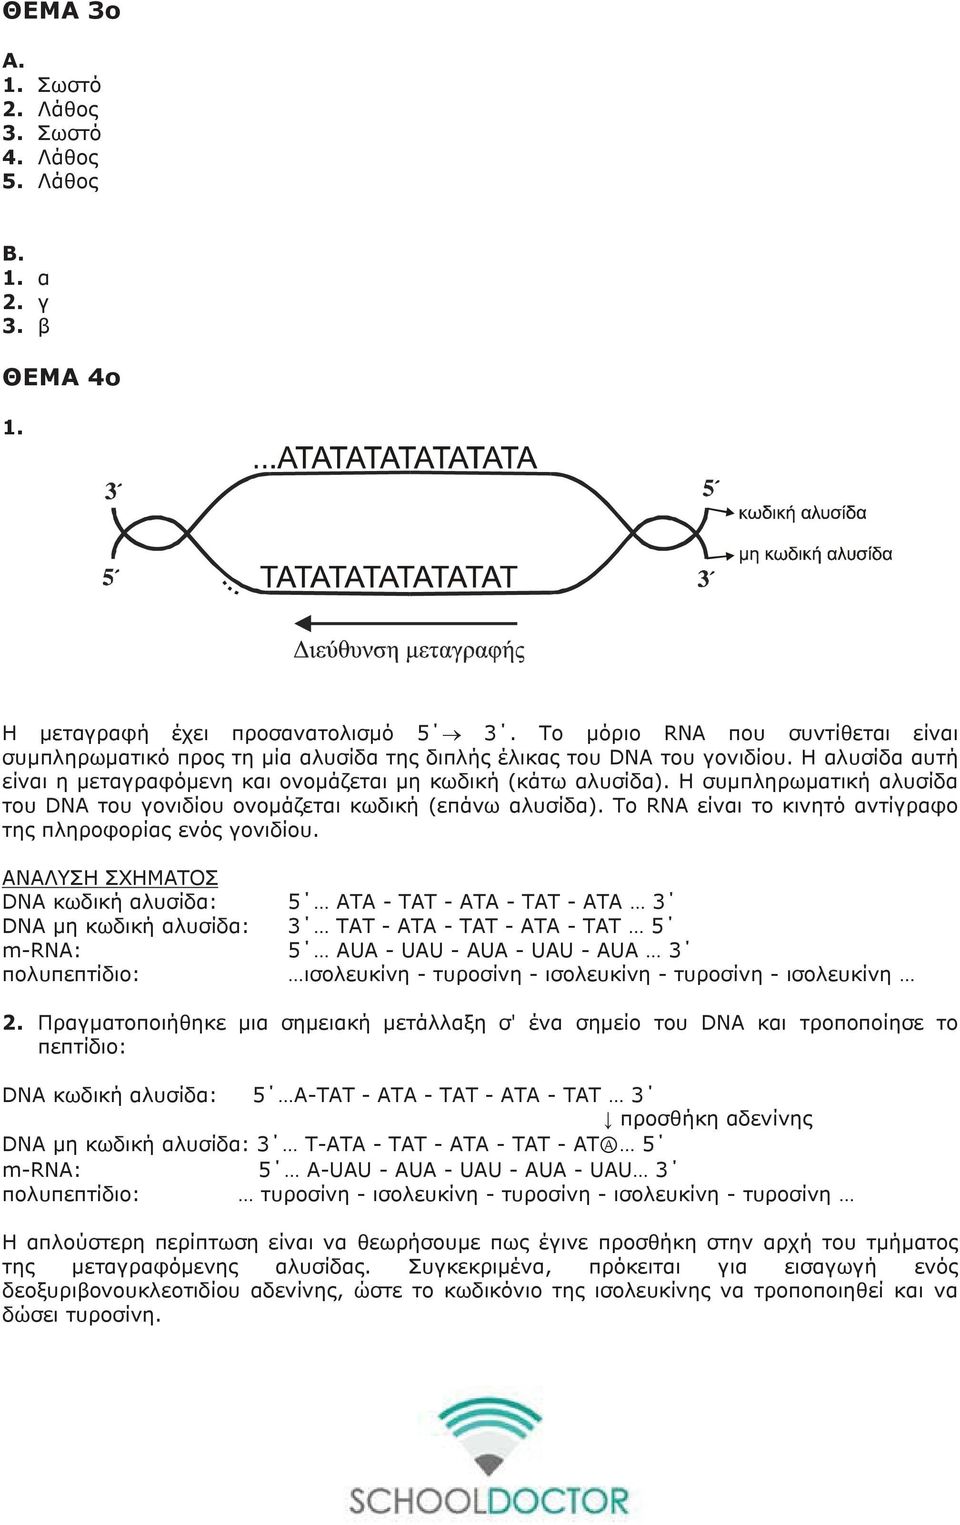 Η συμπληρωματική αλυσίδα του DNA του γονιδίου ονομάζεται κωδική (επάνω αλυσίδα). Το RNA είναι το κινητό αντίγραφο της πληροφορίας ενός γονιδίου.